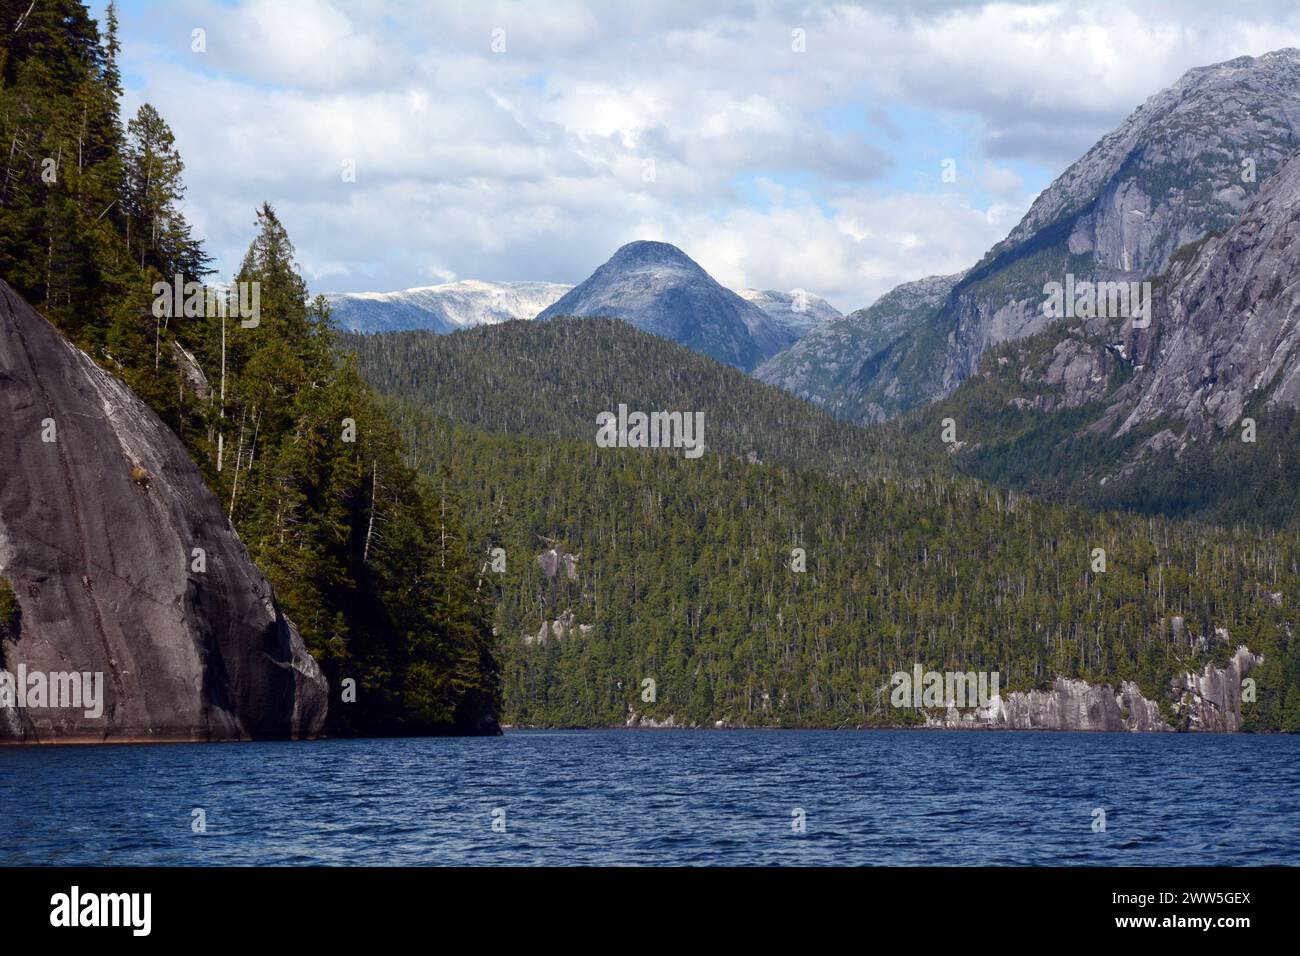 Montagnes et forêt de la côte du Pacifique au lac Ellerslie, dans la forêt pluviale Great Bear, territoire de la première nation Heiltsuk, Colombie-Britannique, Canada. Banque D'Images